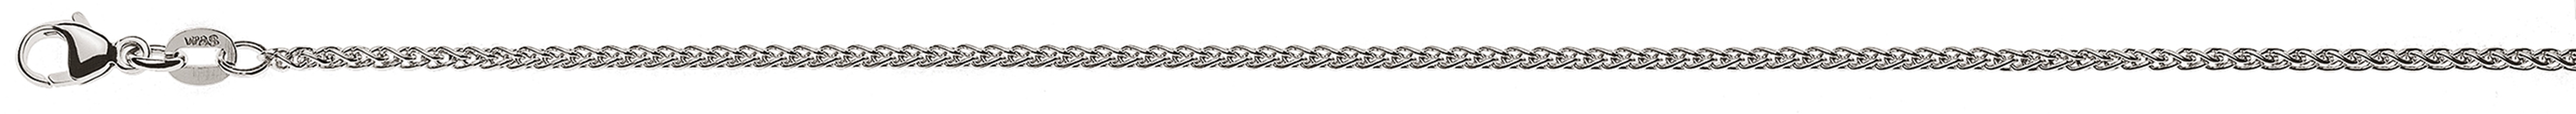 AURONOS Élégance Necklace white gold 14K cable chain 55cm 1.65mm